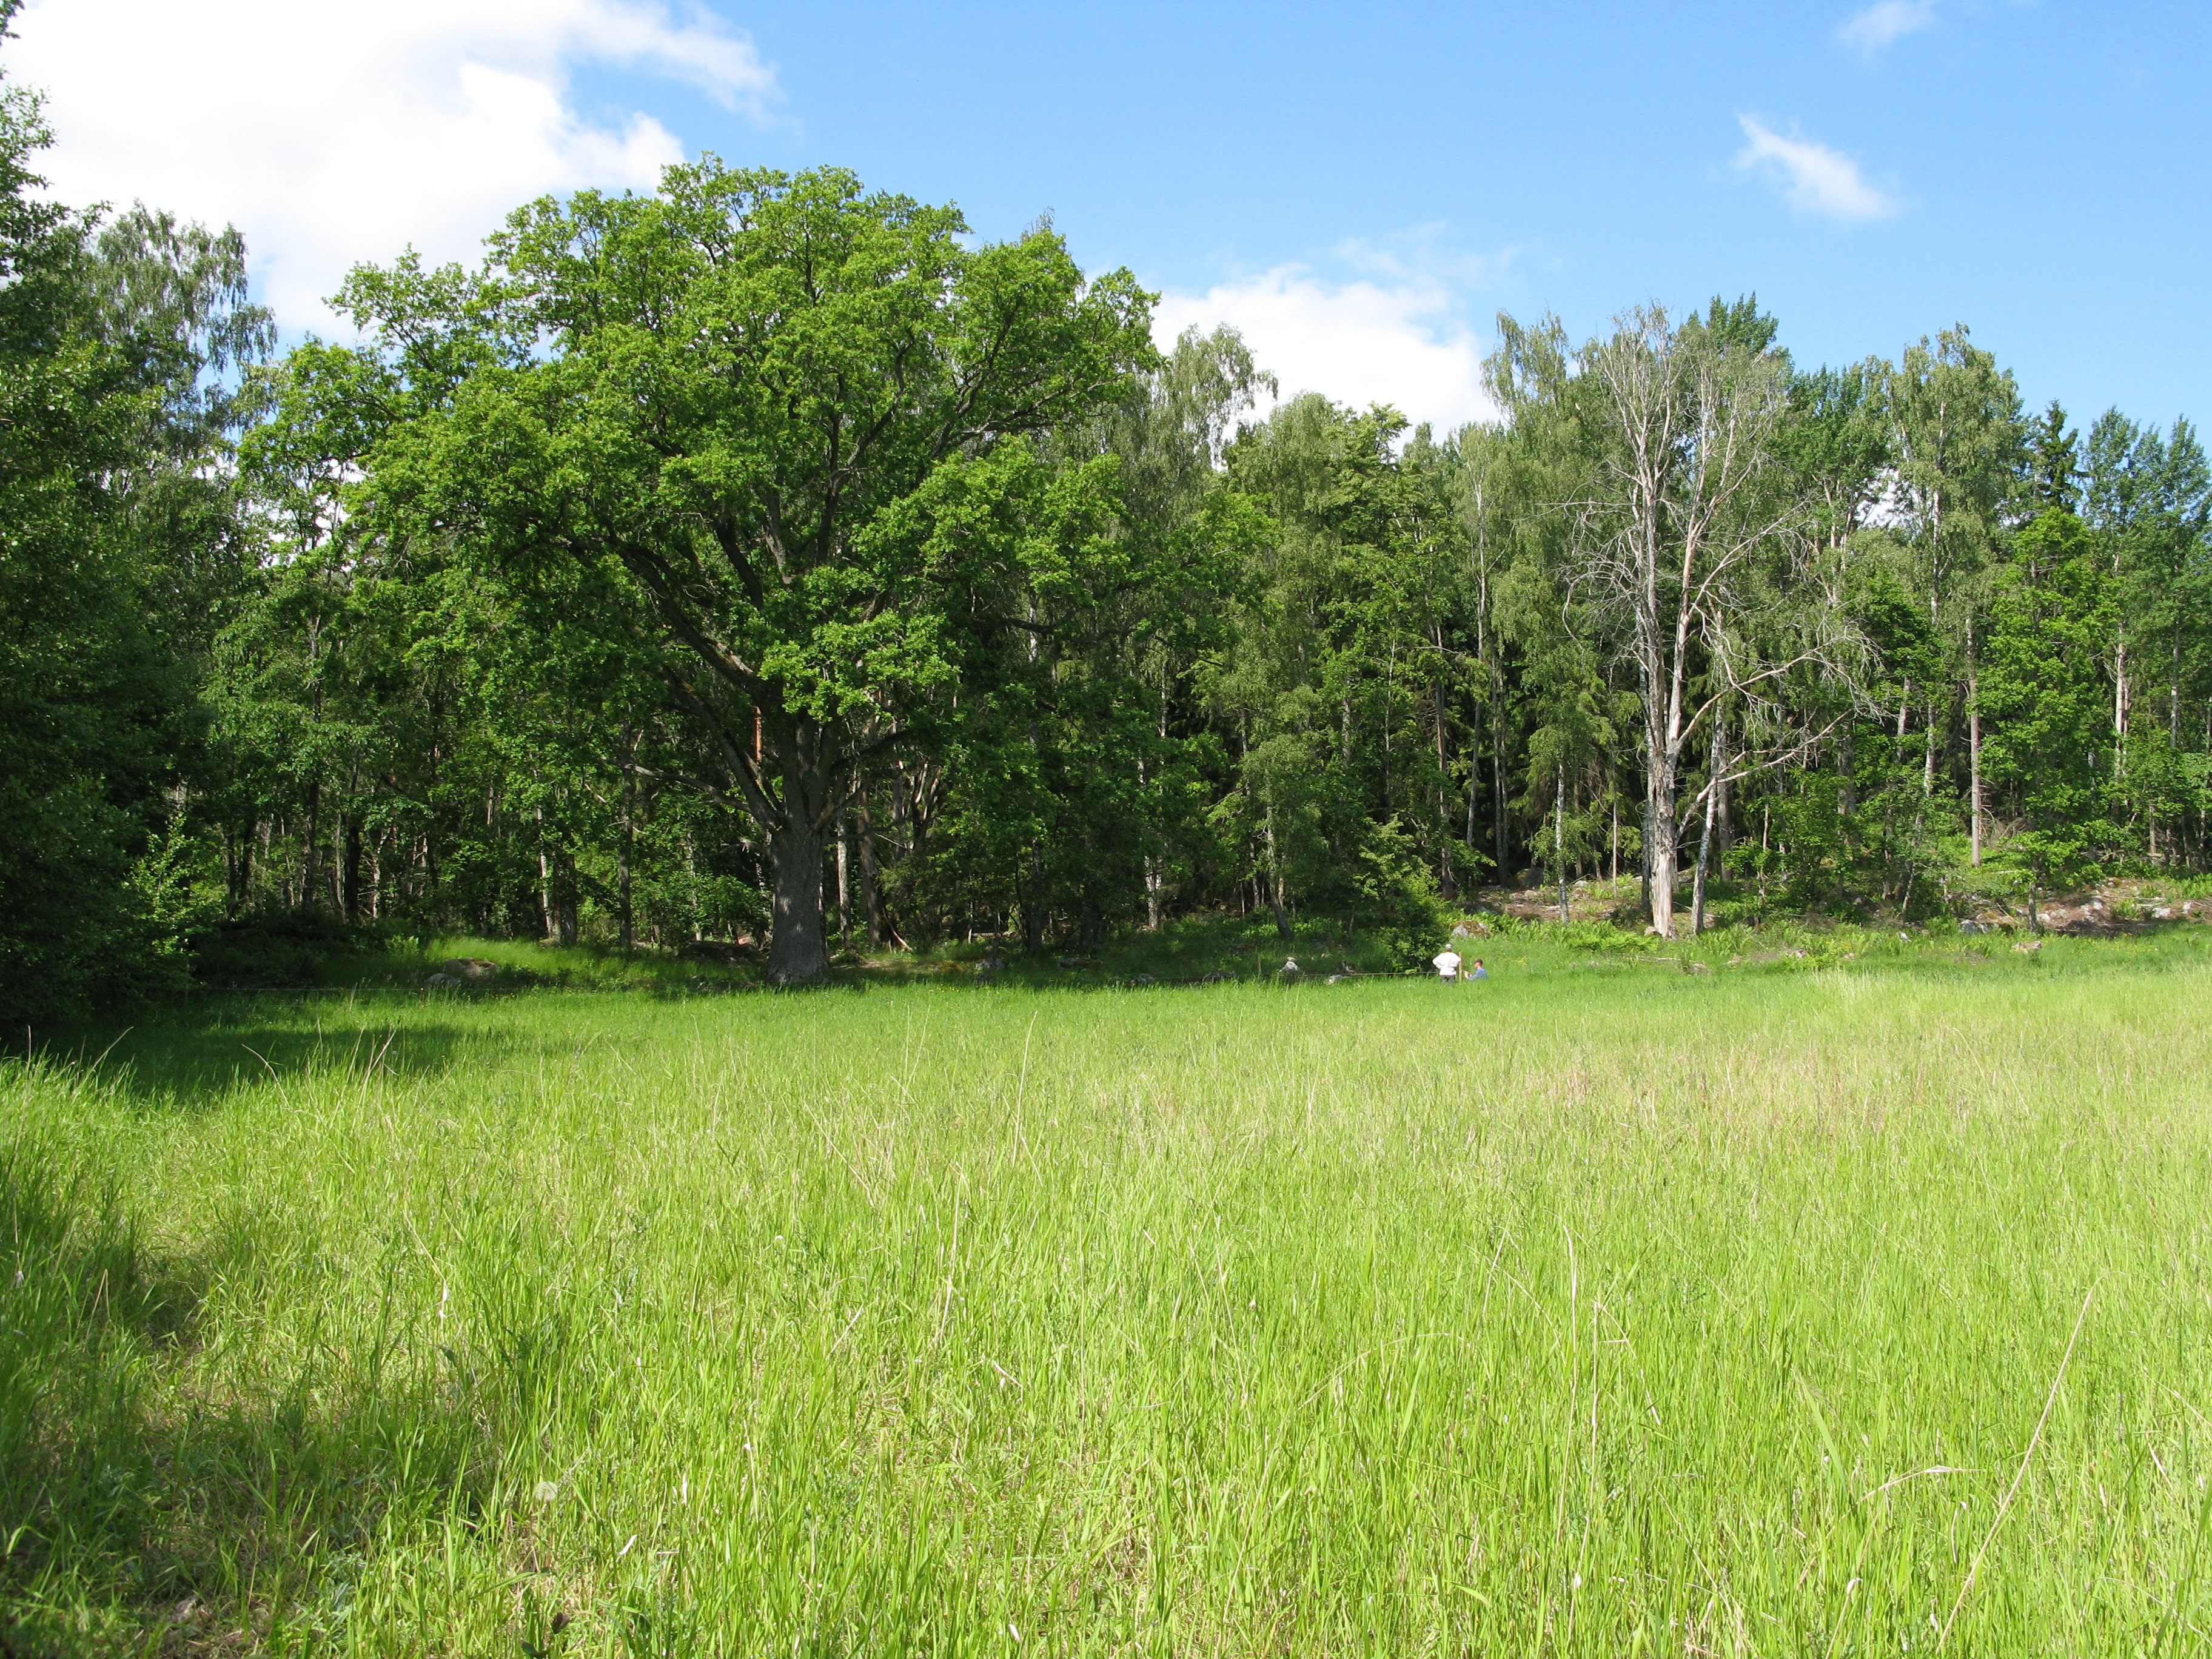 En öppen gräsyta med högt gräs och lövträd i utkanterna. En person står i det höga gräset långt bak i bilden.